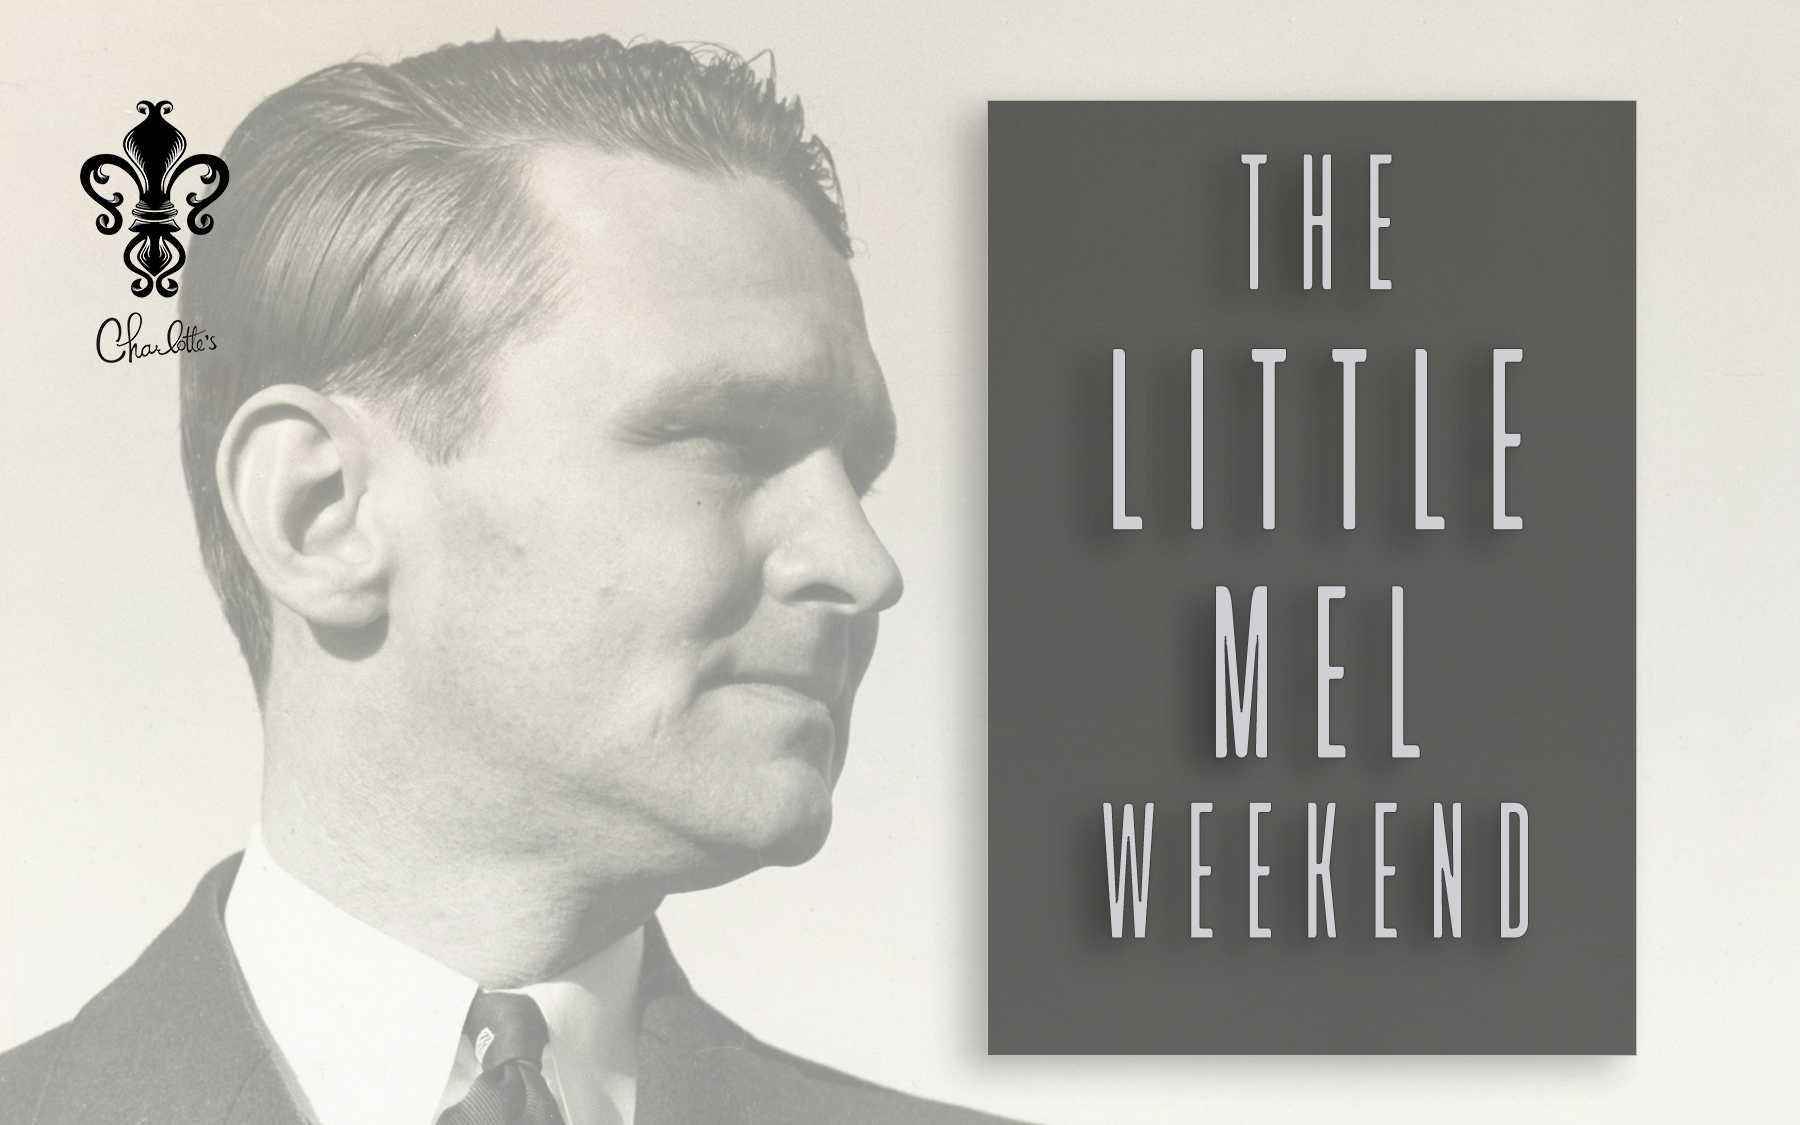 The Little Mel Weekend